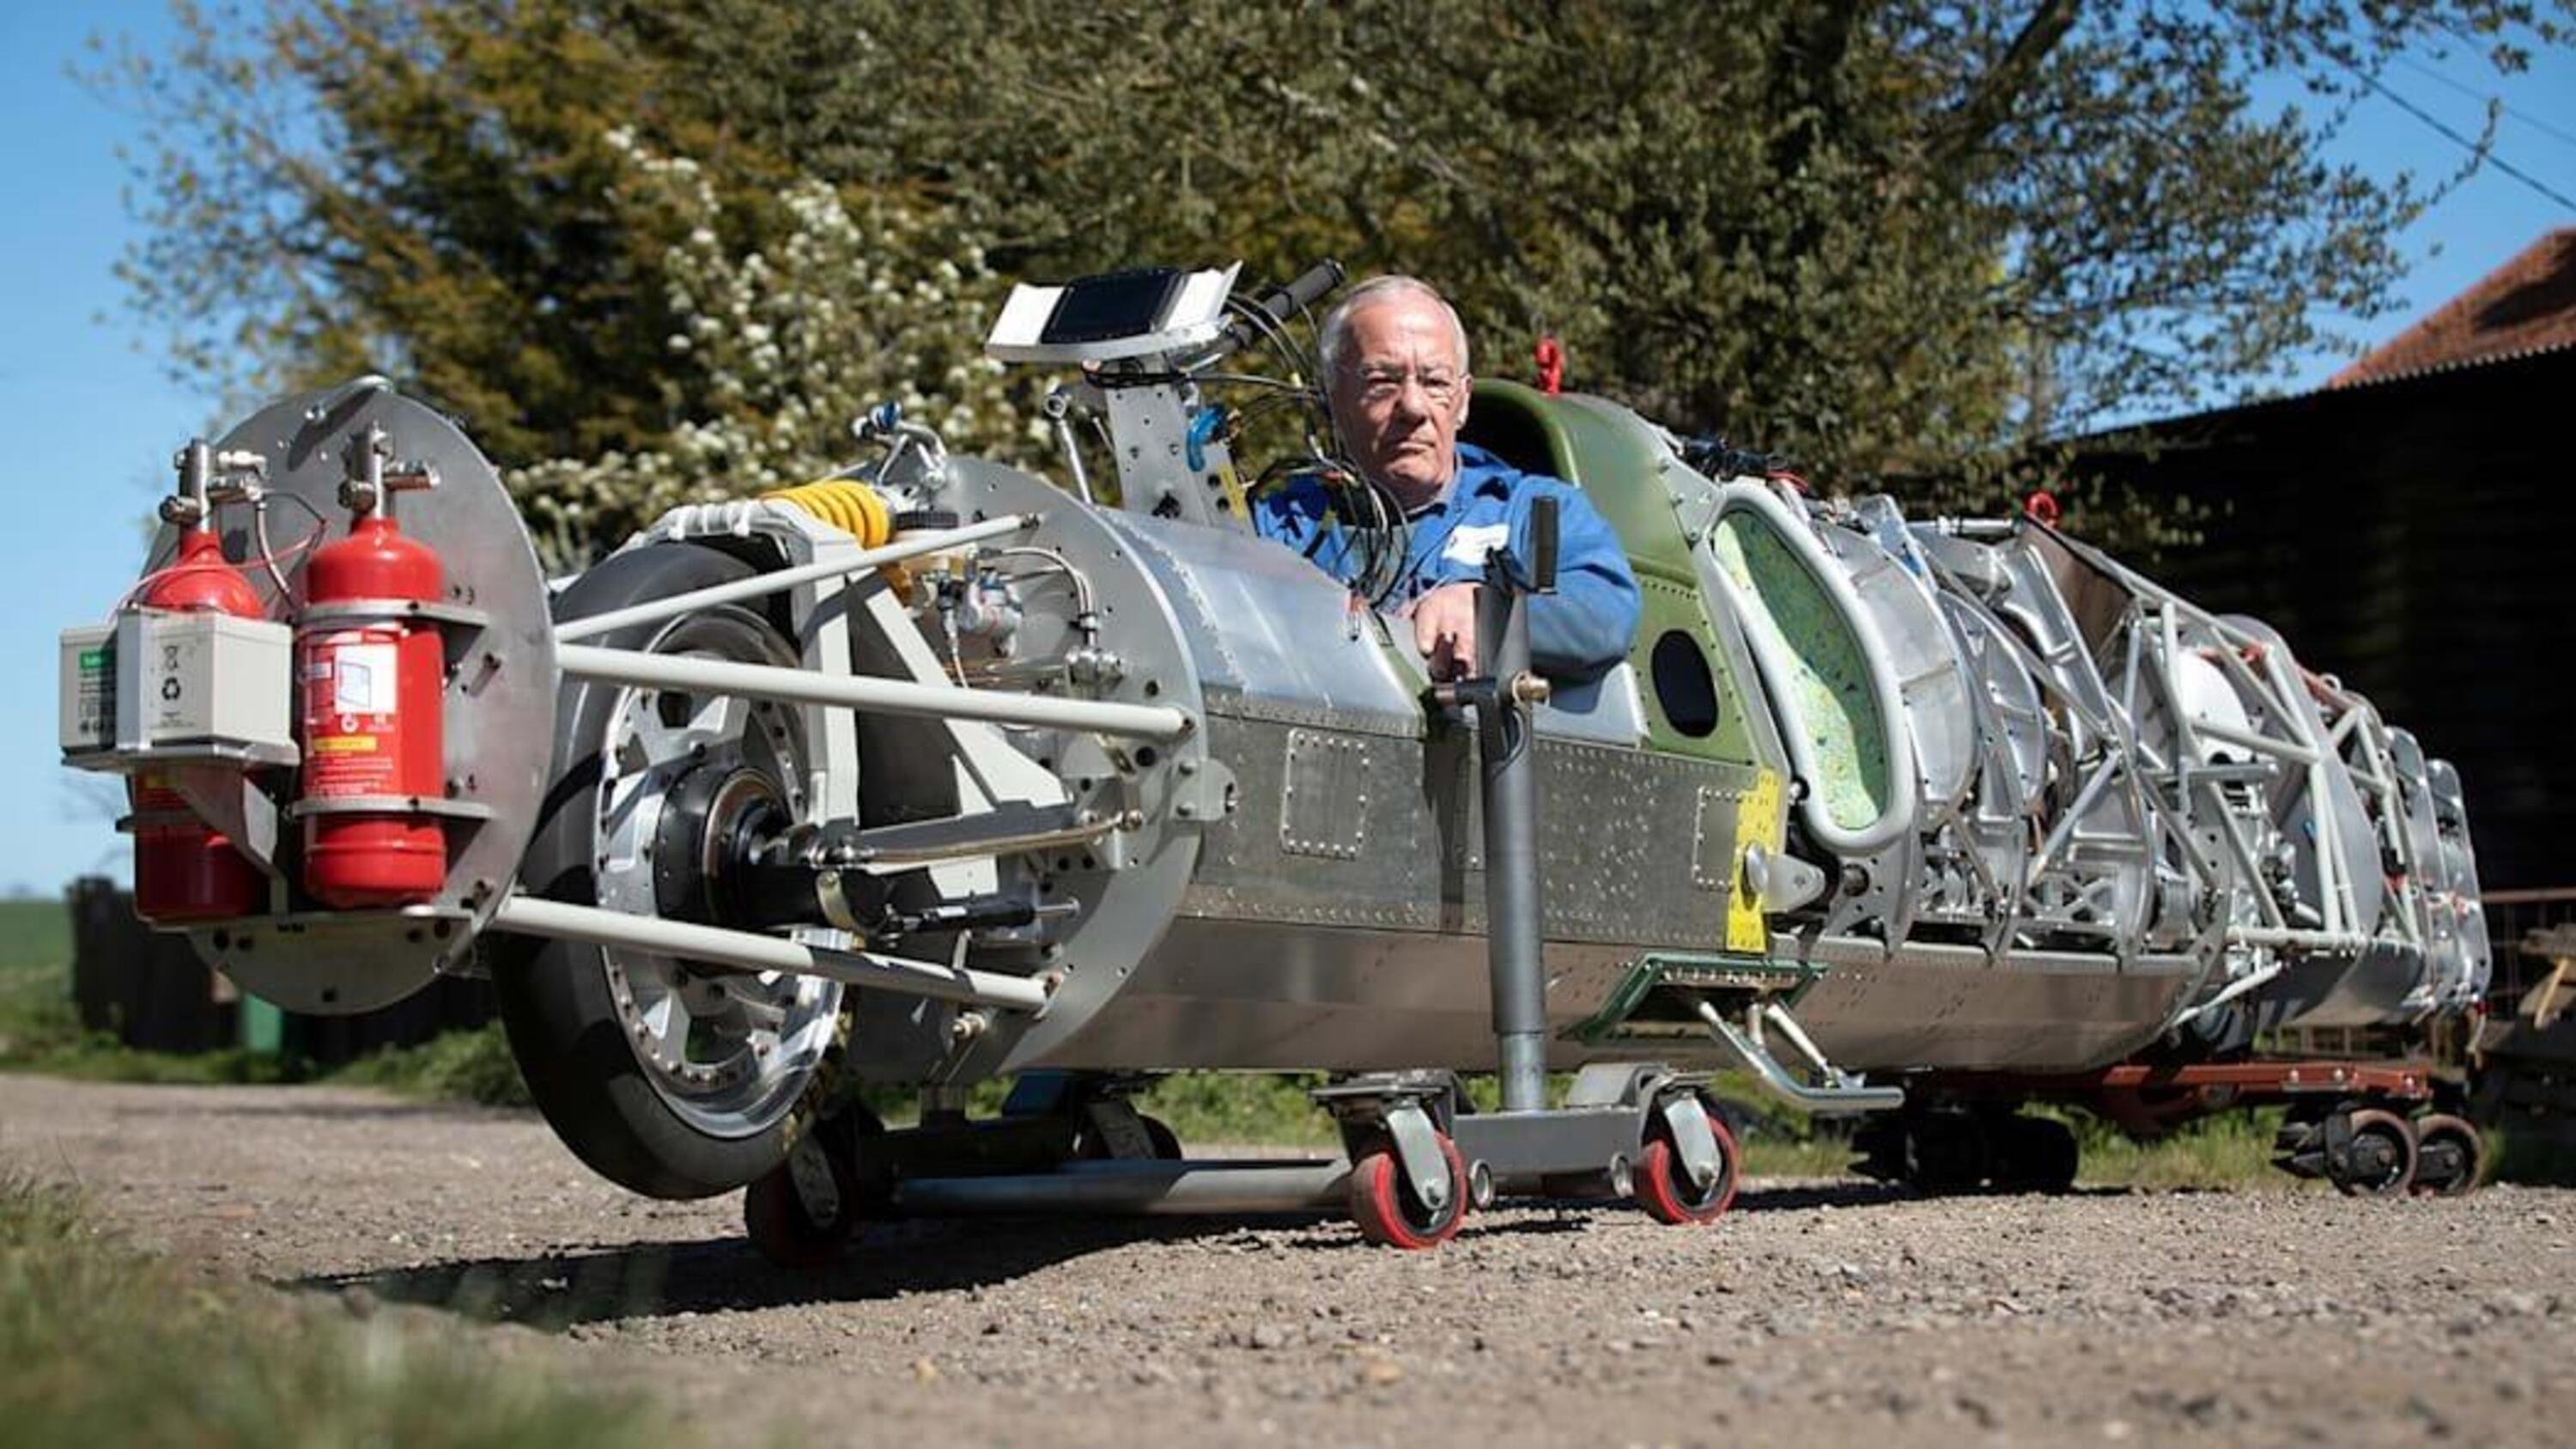 Guy Martin a caccia di record su una moto da 650 km/h?